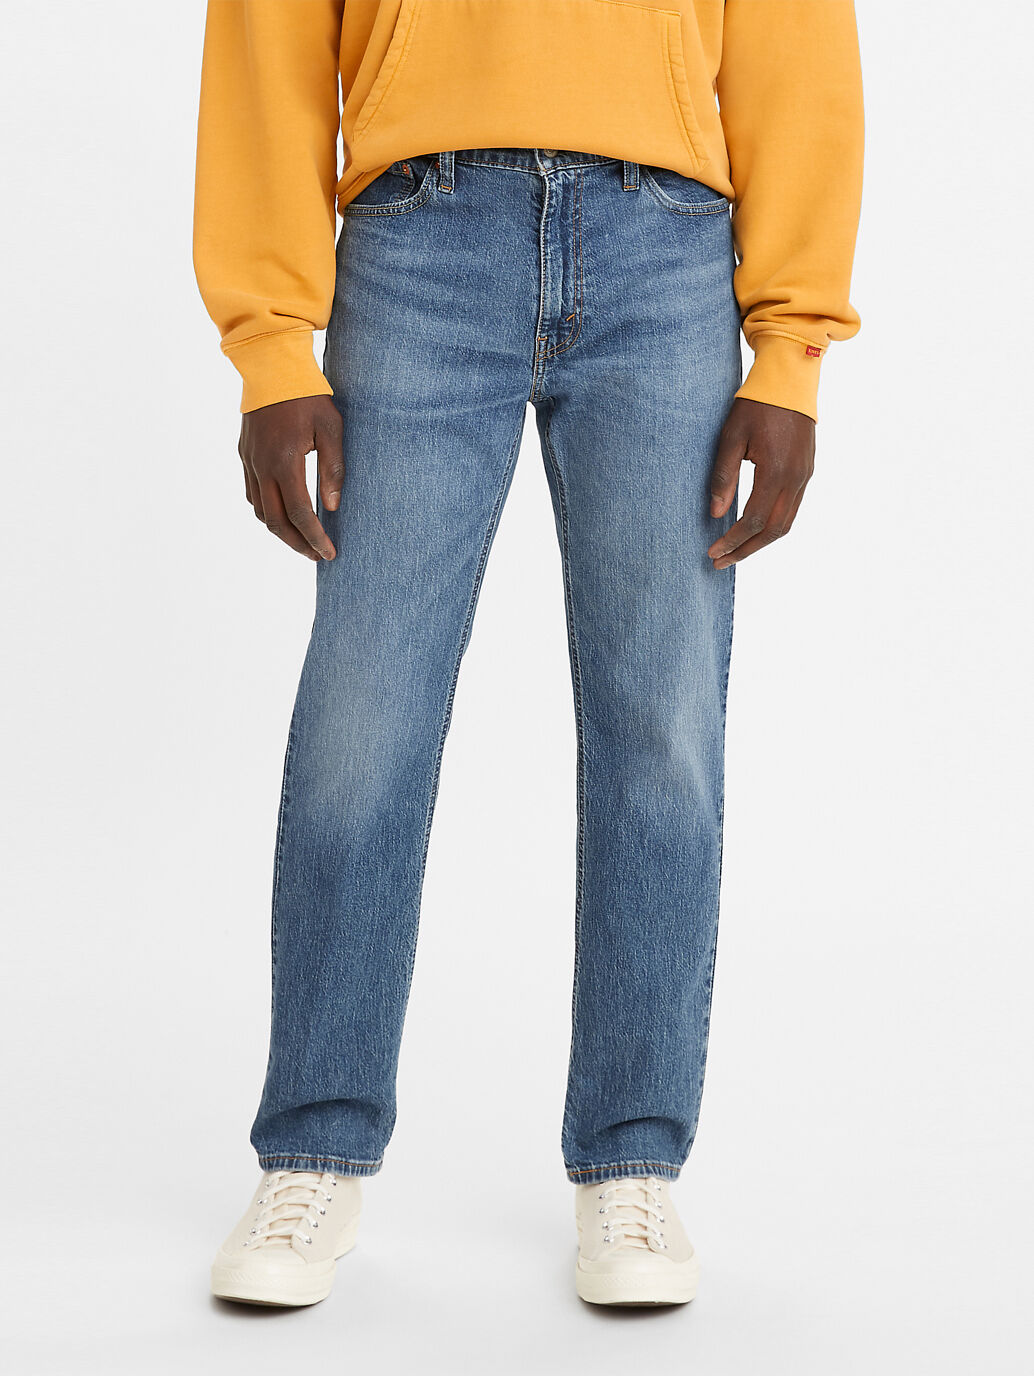 Blue 541™ Athletic Taper Jeans for Men - Shop Online